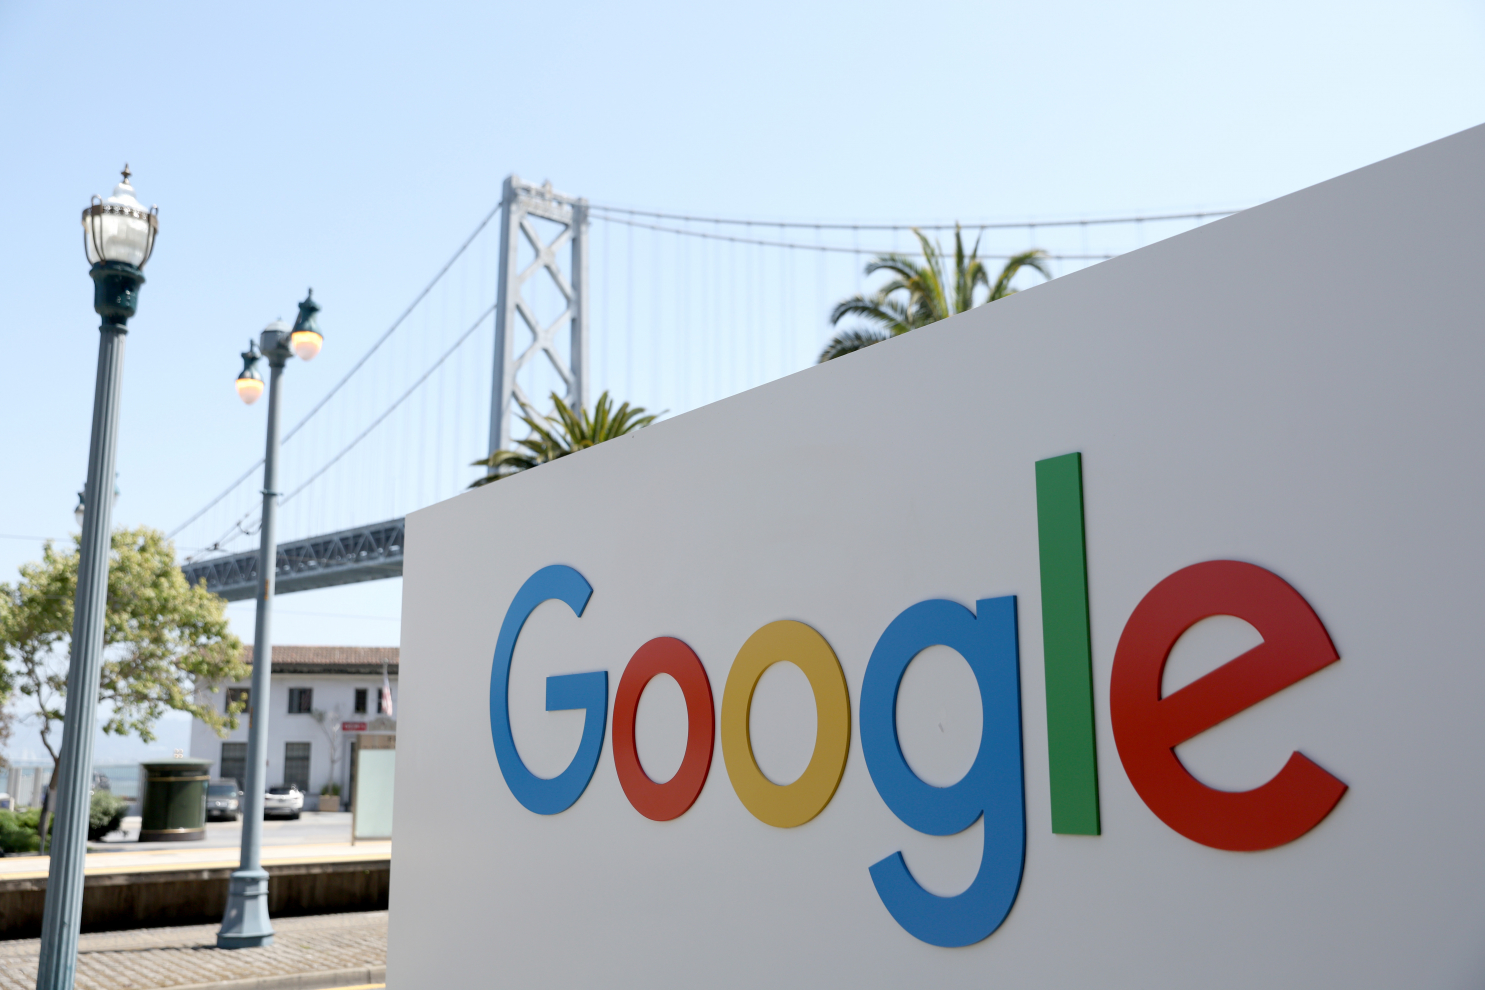 Google, Meta bị phạt vì thu thập dữ liệu cá nhân bất hợp pháp ở Hàn Quốc